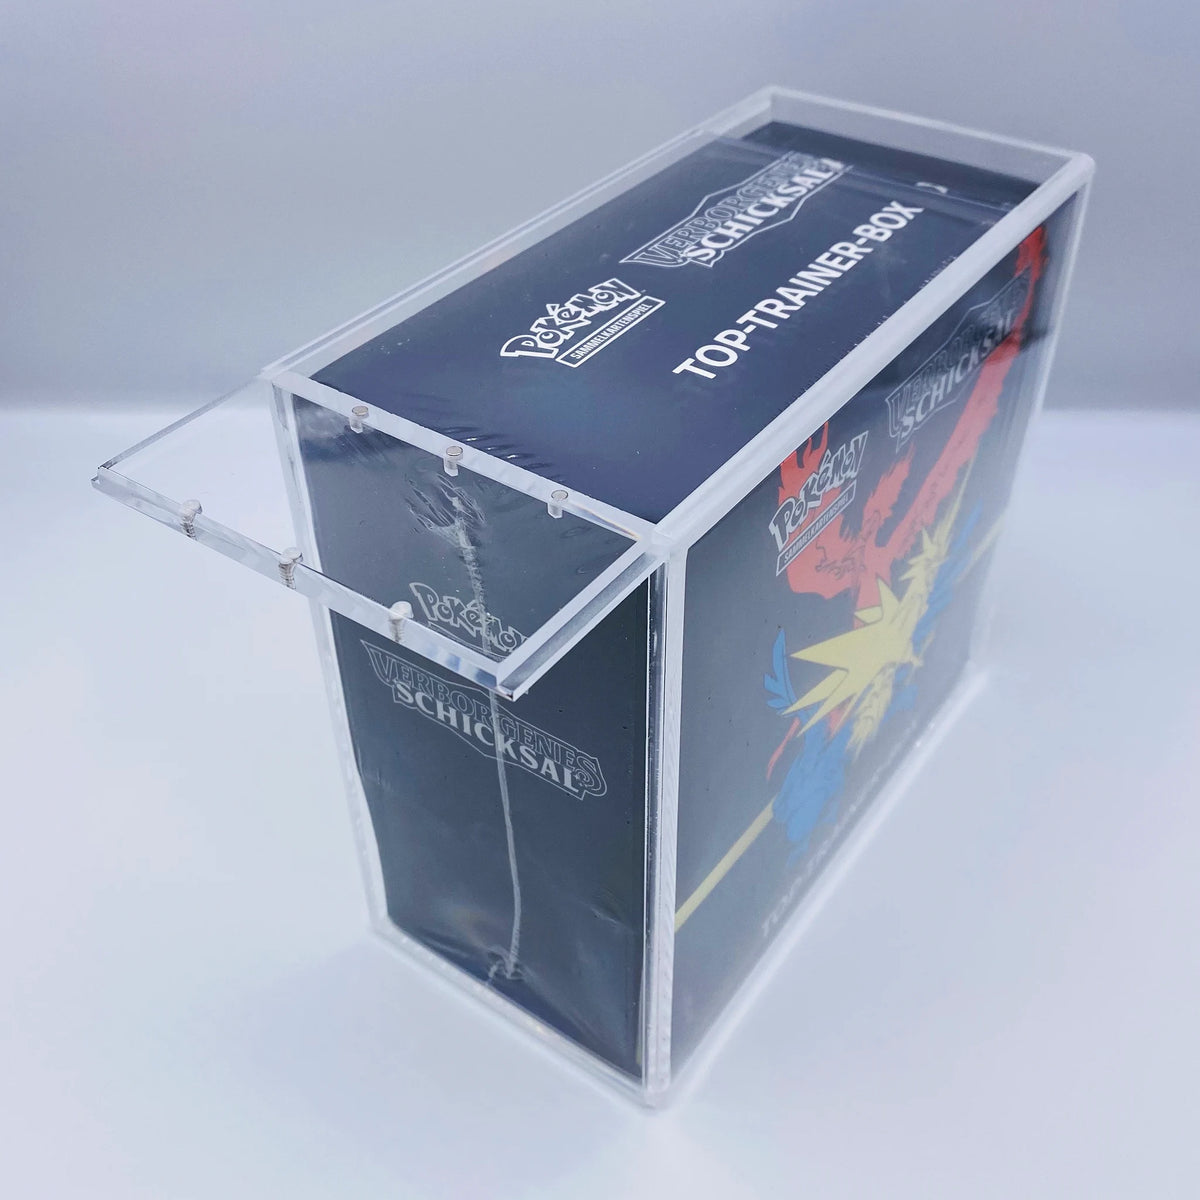 Pokemon Elite/Top Trainer Box - Acryl Case